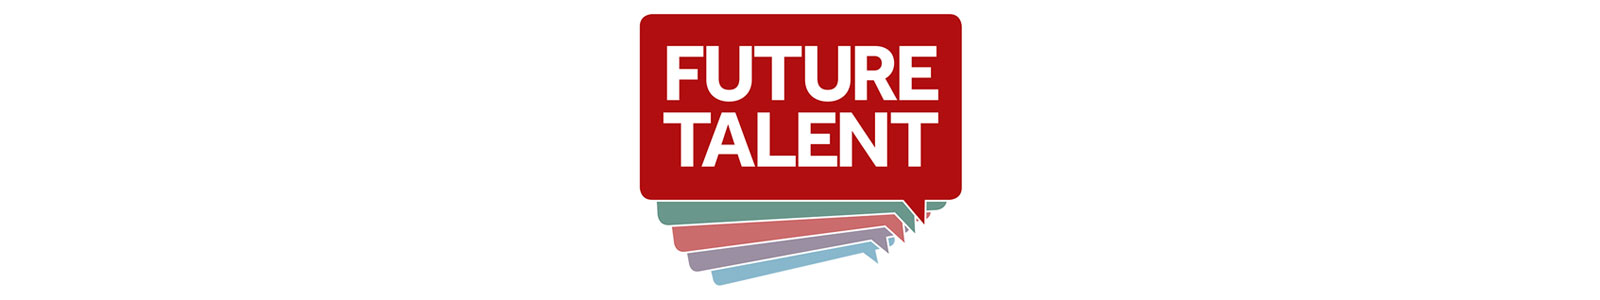 Future Talent